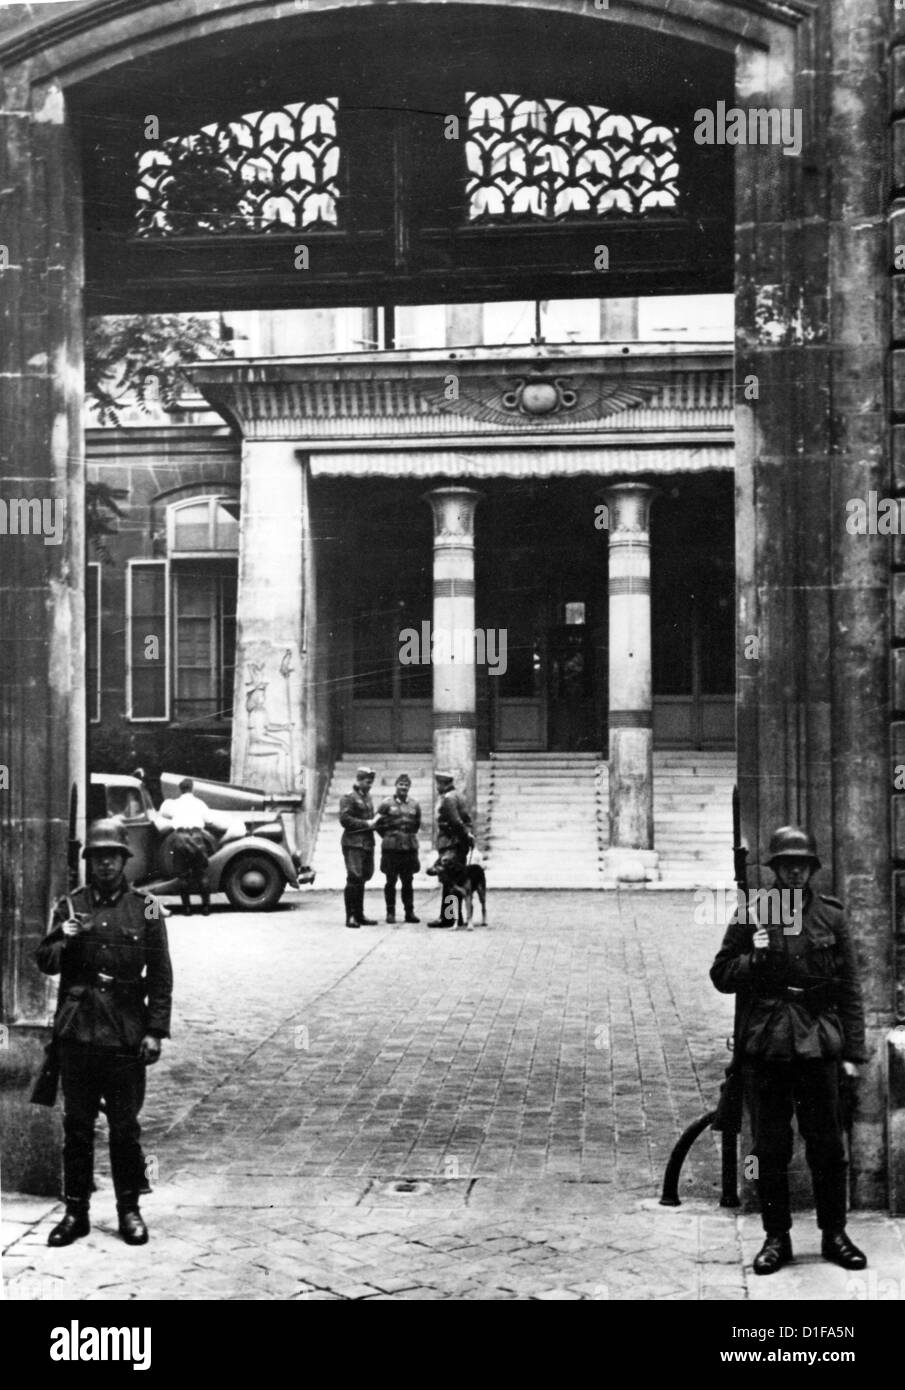 L'Ambasciata tedesca viene riaperta dopo l'invasione delle truppe tedesche a Parigi, in Francia, nel giugno 1940. Fotoarchiv für Zeitgeschichte Foto Stock